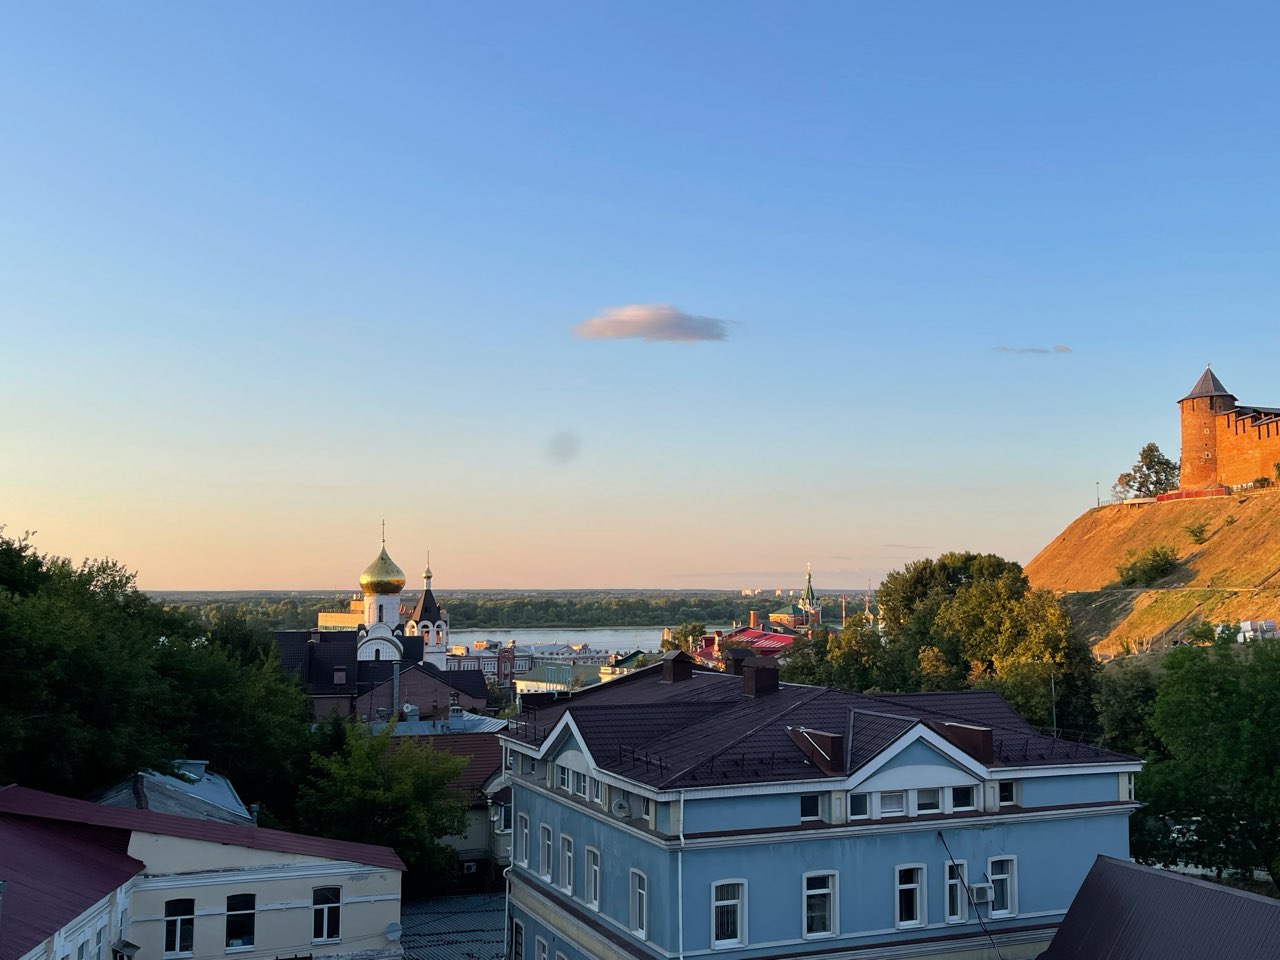 Карту Нижнего Новгорода с возрастом домов создали к 800-летию - фото 1